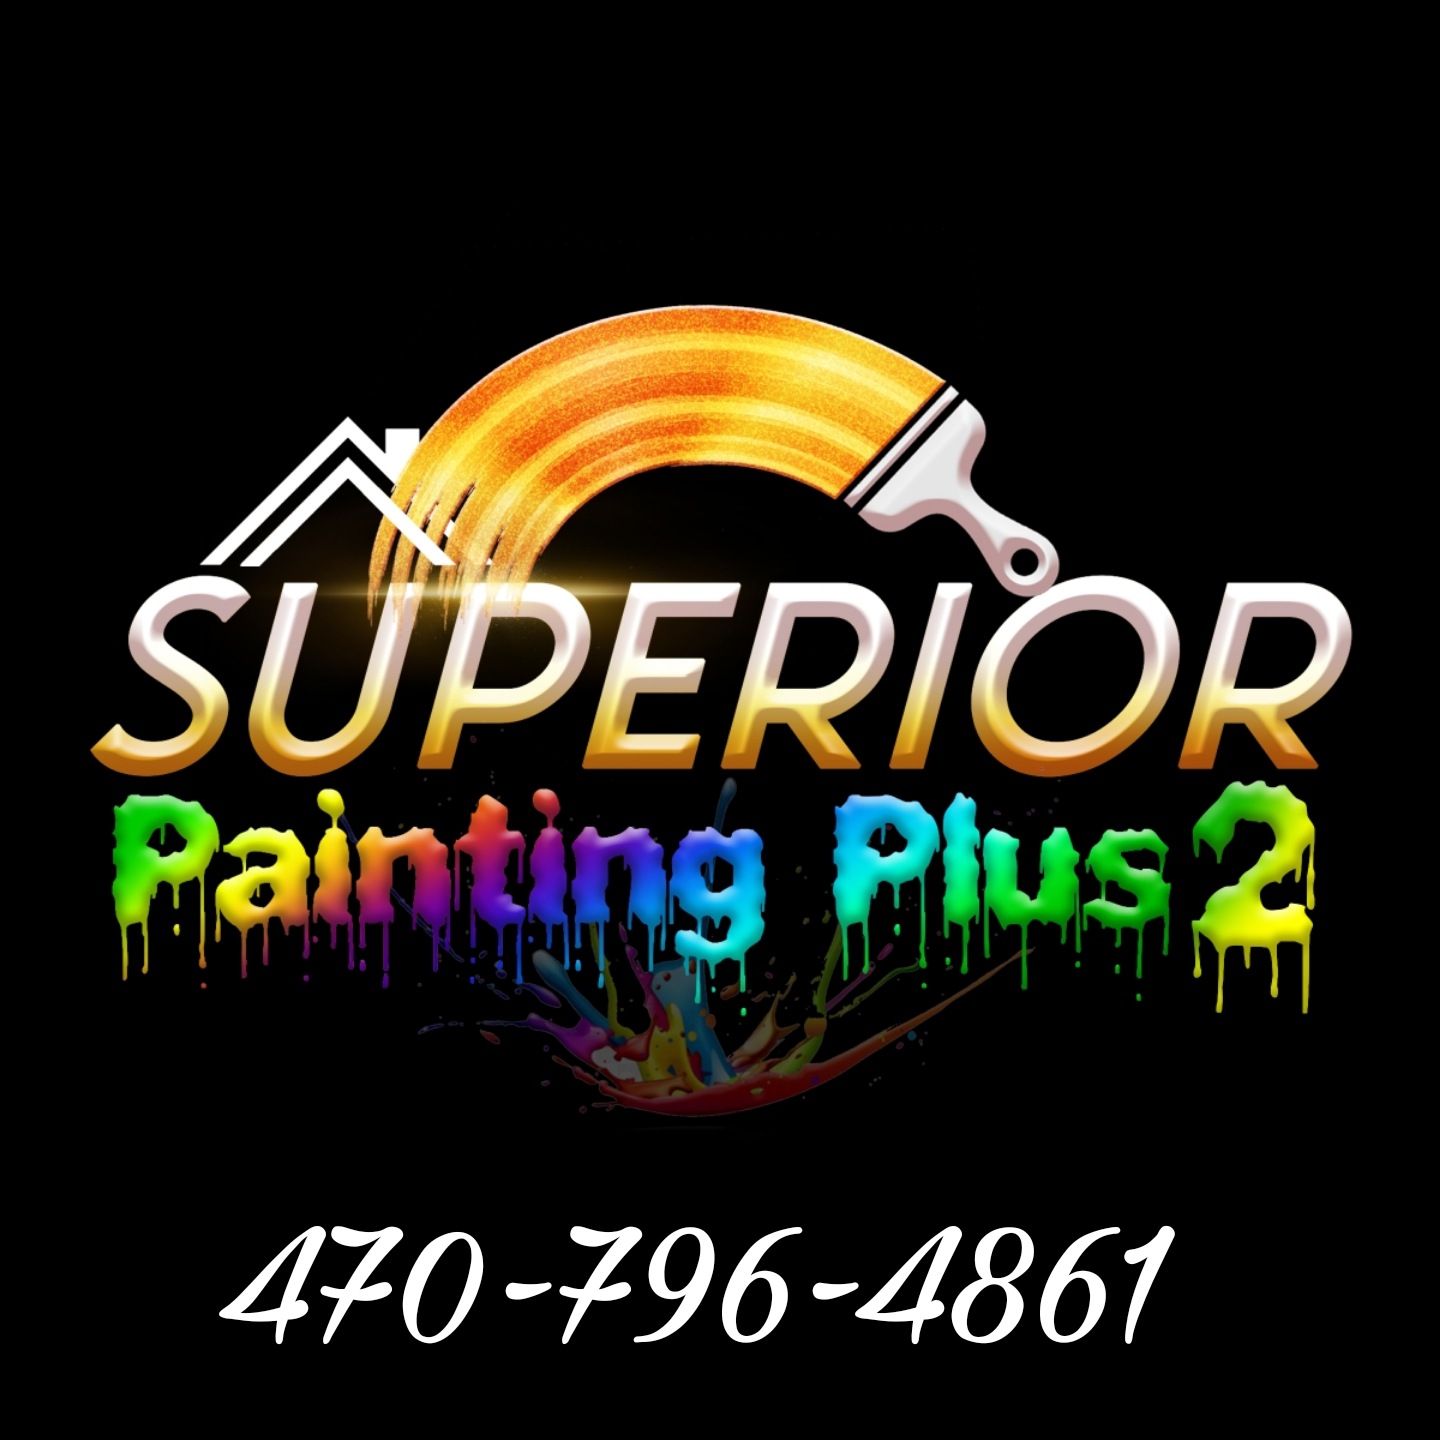 Superior Painting Plus 2 Logo